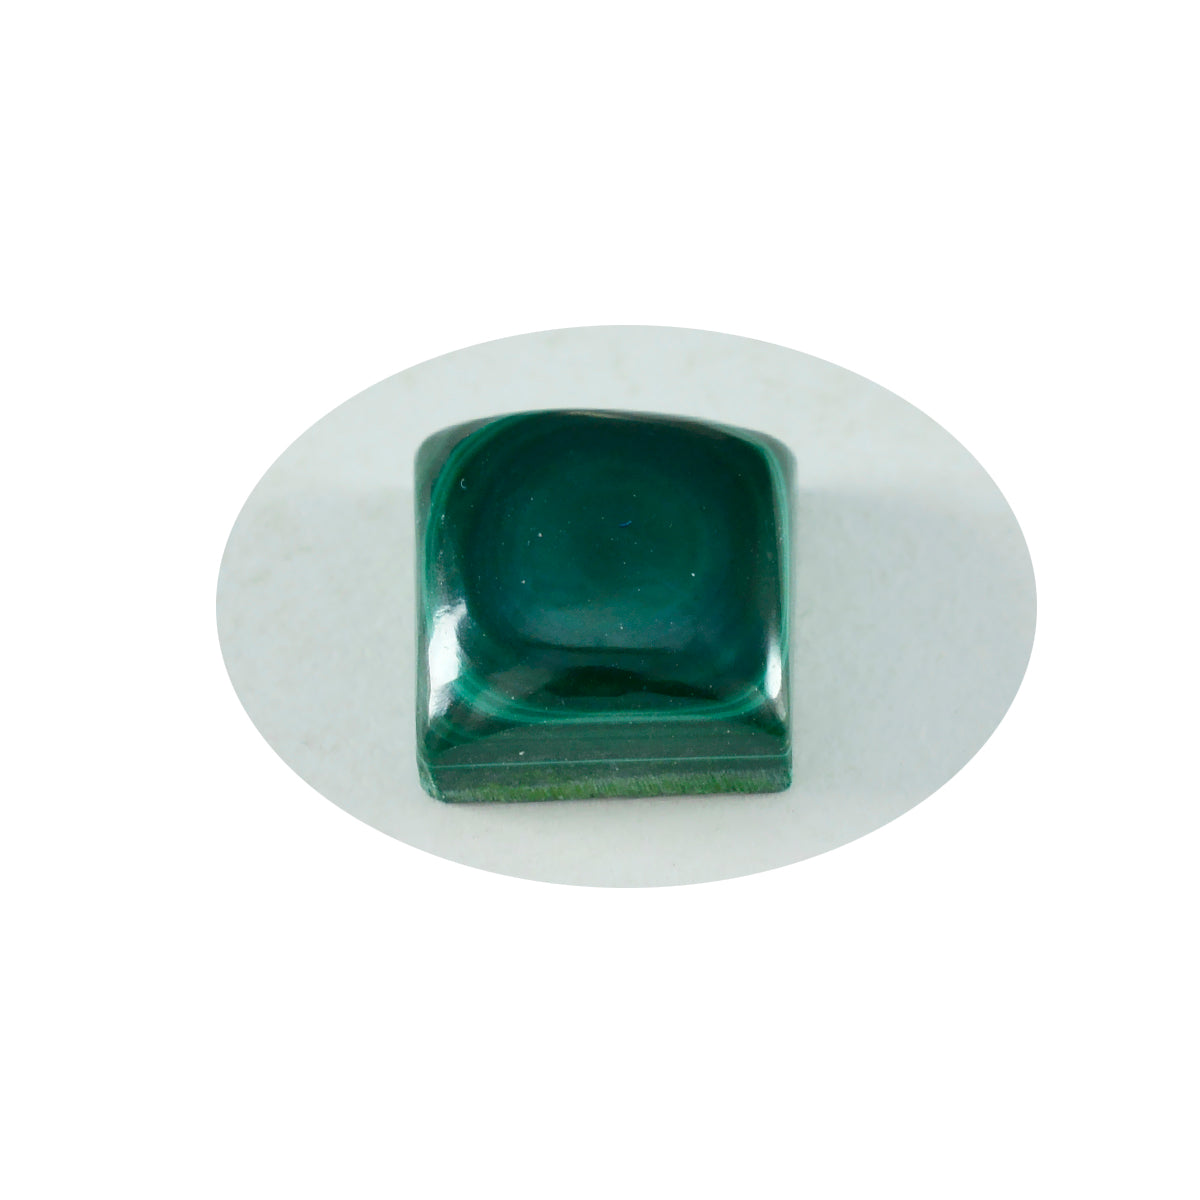 riyogems 1pc グリーン マラカイト カボション 13x13 mm 正方形 a+1 品質ルース宝石